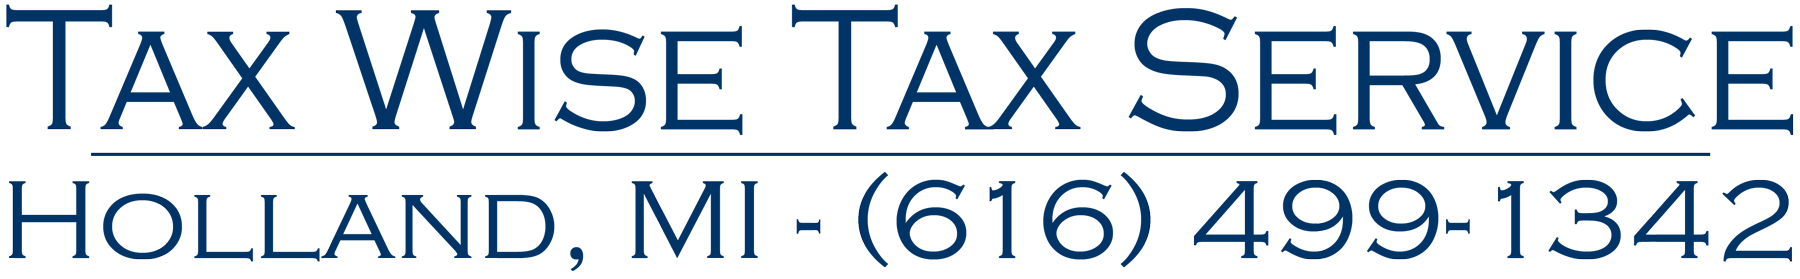 Tax Wise Tax Service Holland, MI